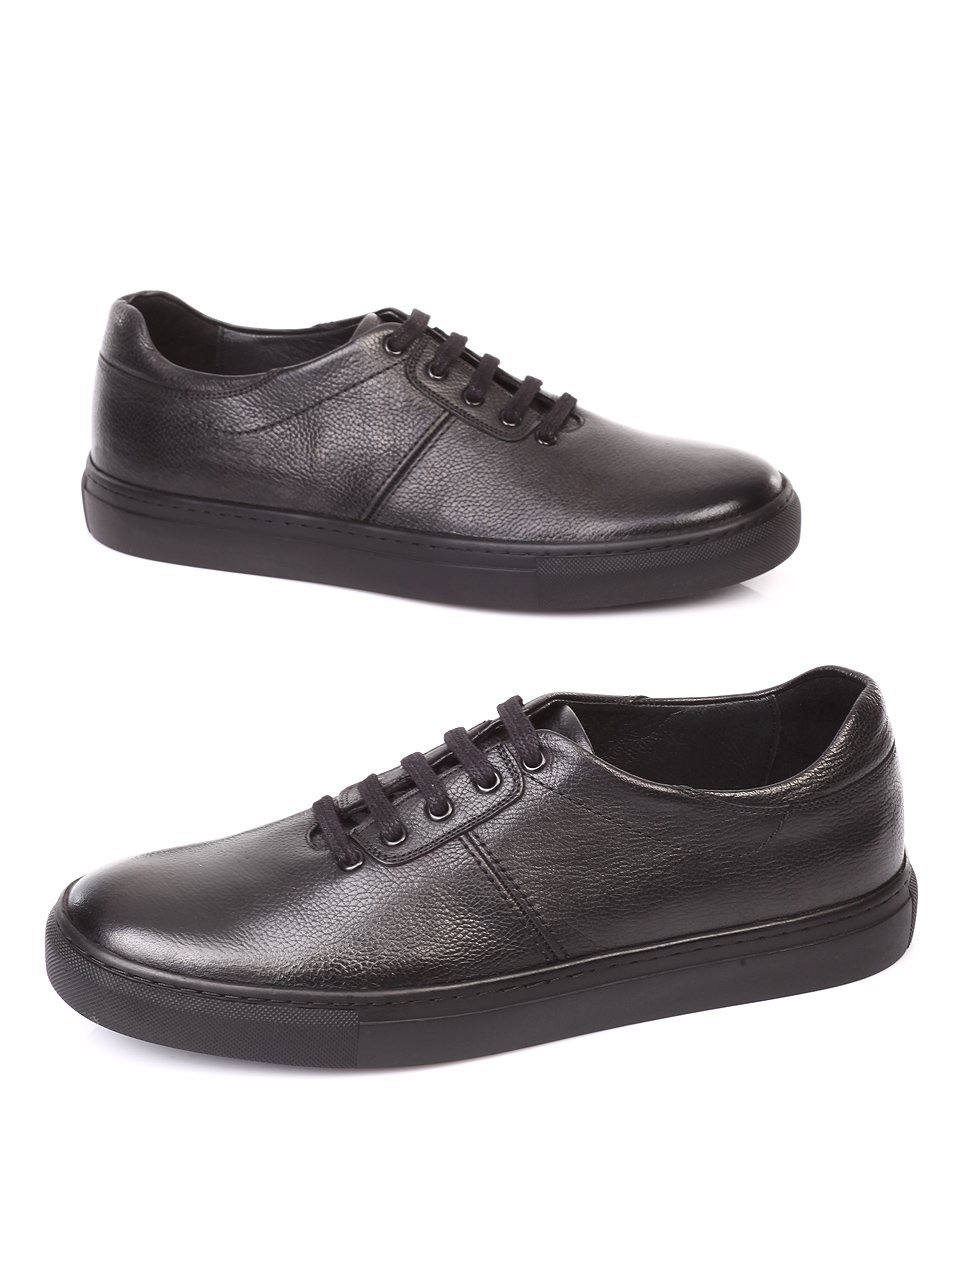 Спортно-елегантни мъжки обувки от естествена кожа 7AT-171187 black